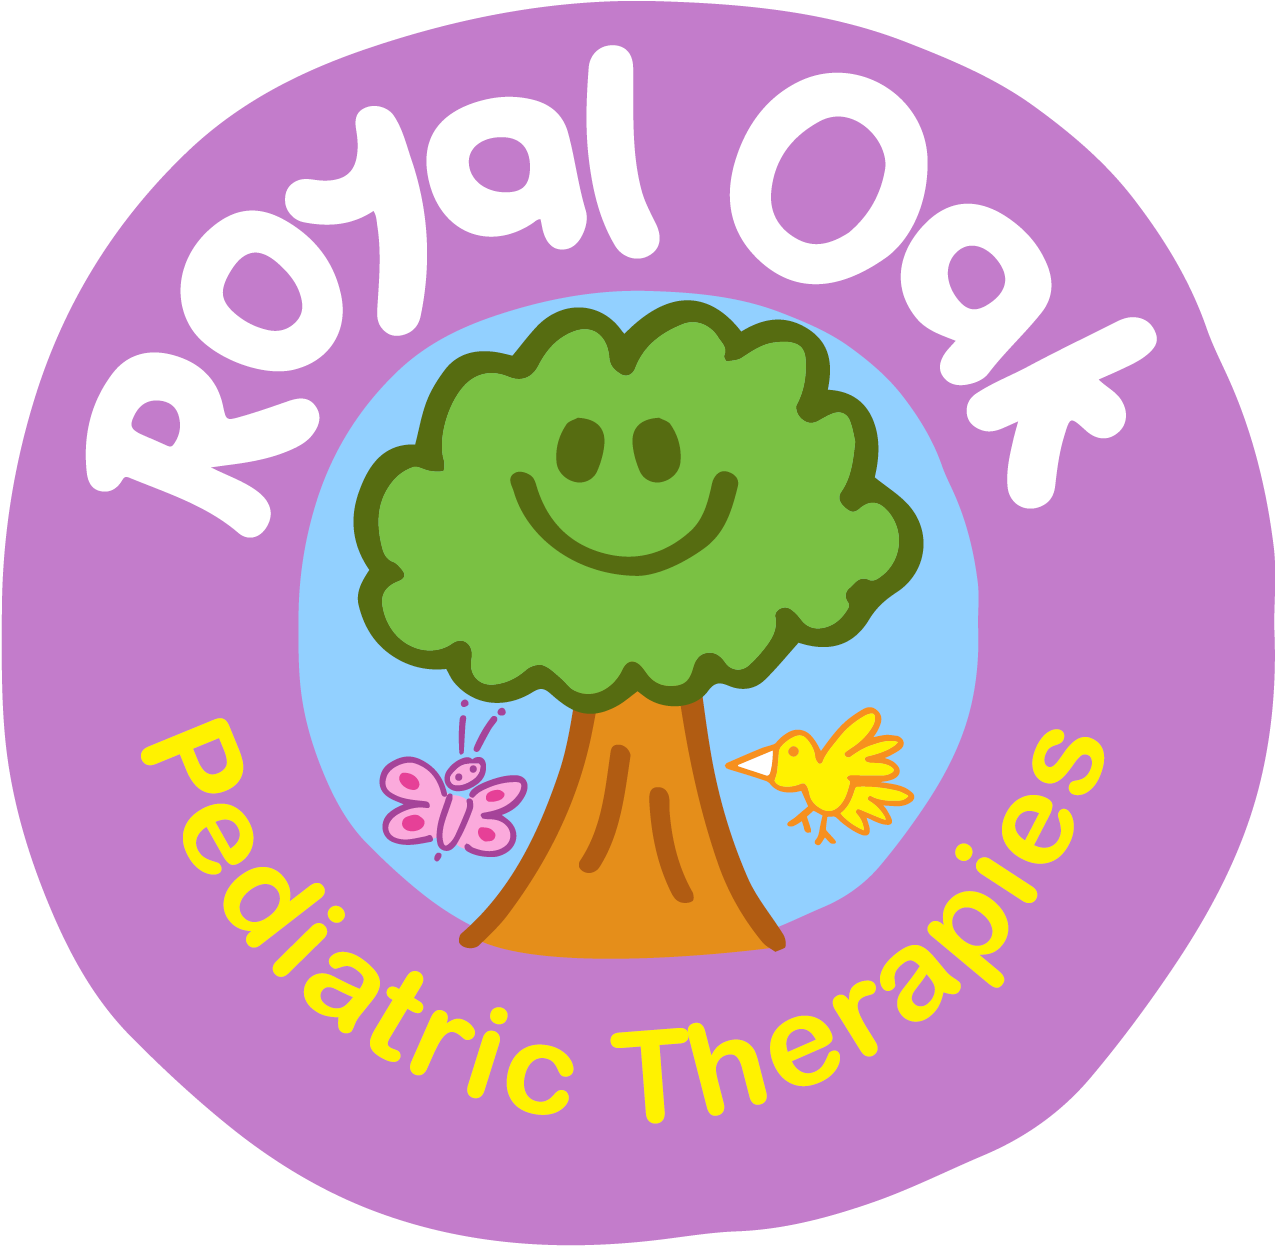 Royal Oak Pediatric Therapies - Therapy (1297x1270)